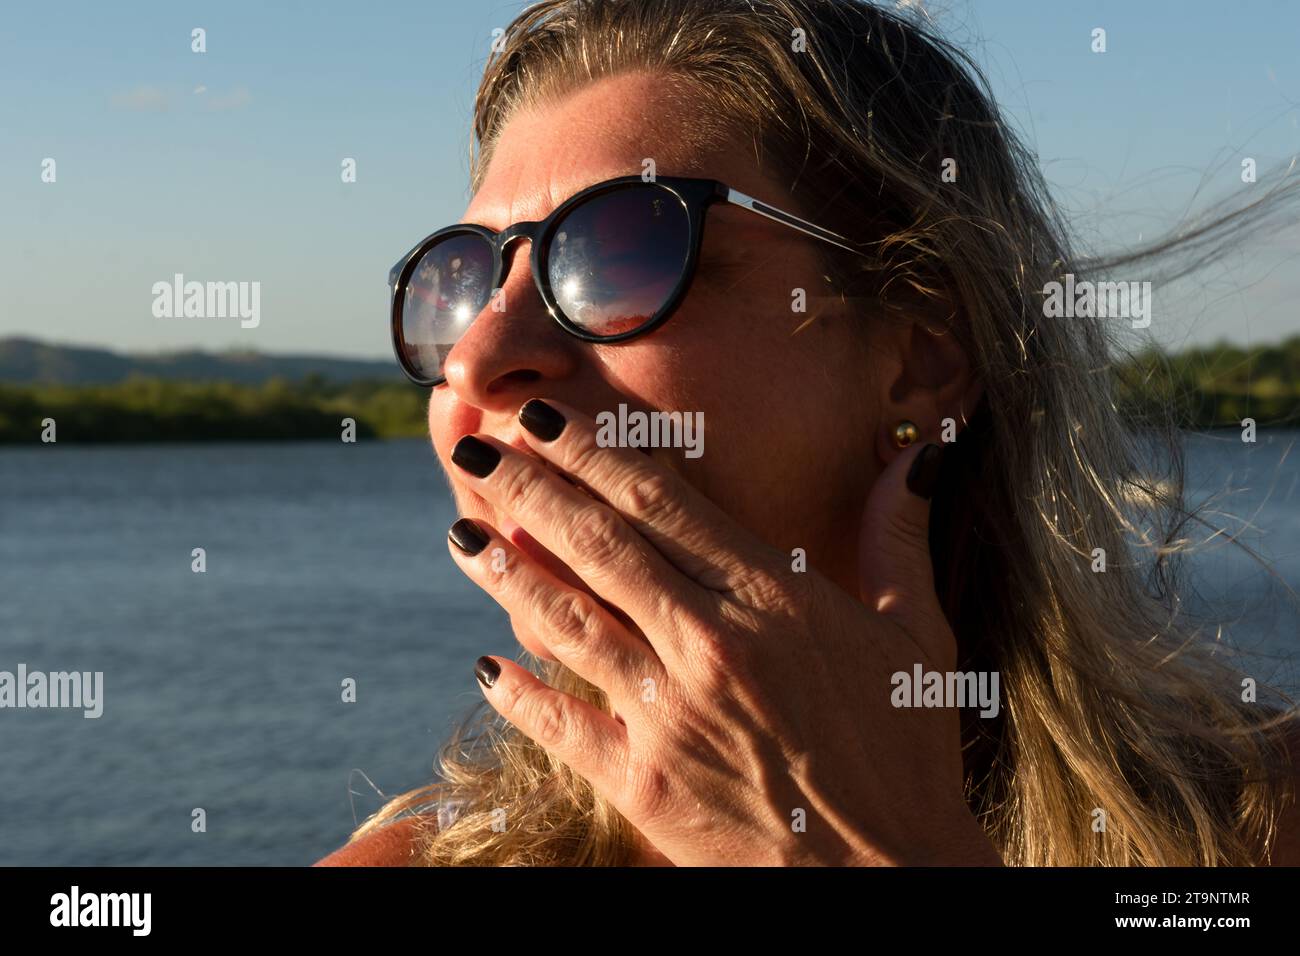 Ritratto del viso di una bella donna bionda che indossa occhiali da sole con la mano sulla bocca, contro un fiume. Foto Stock